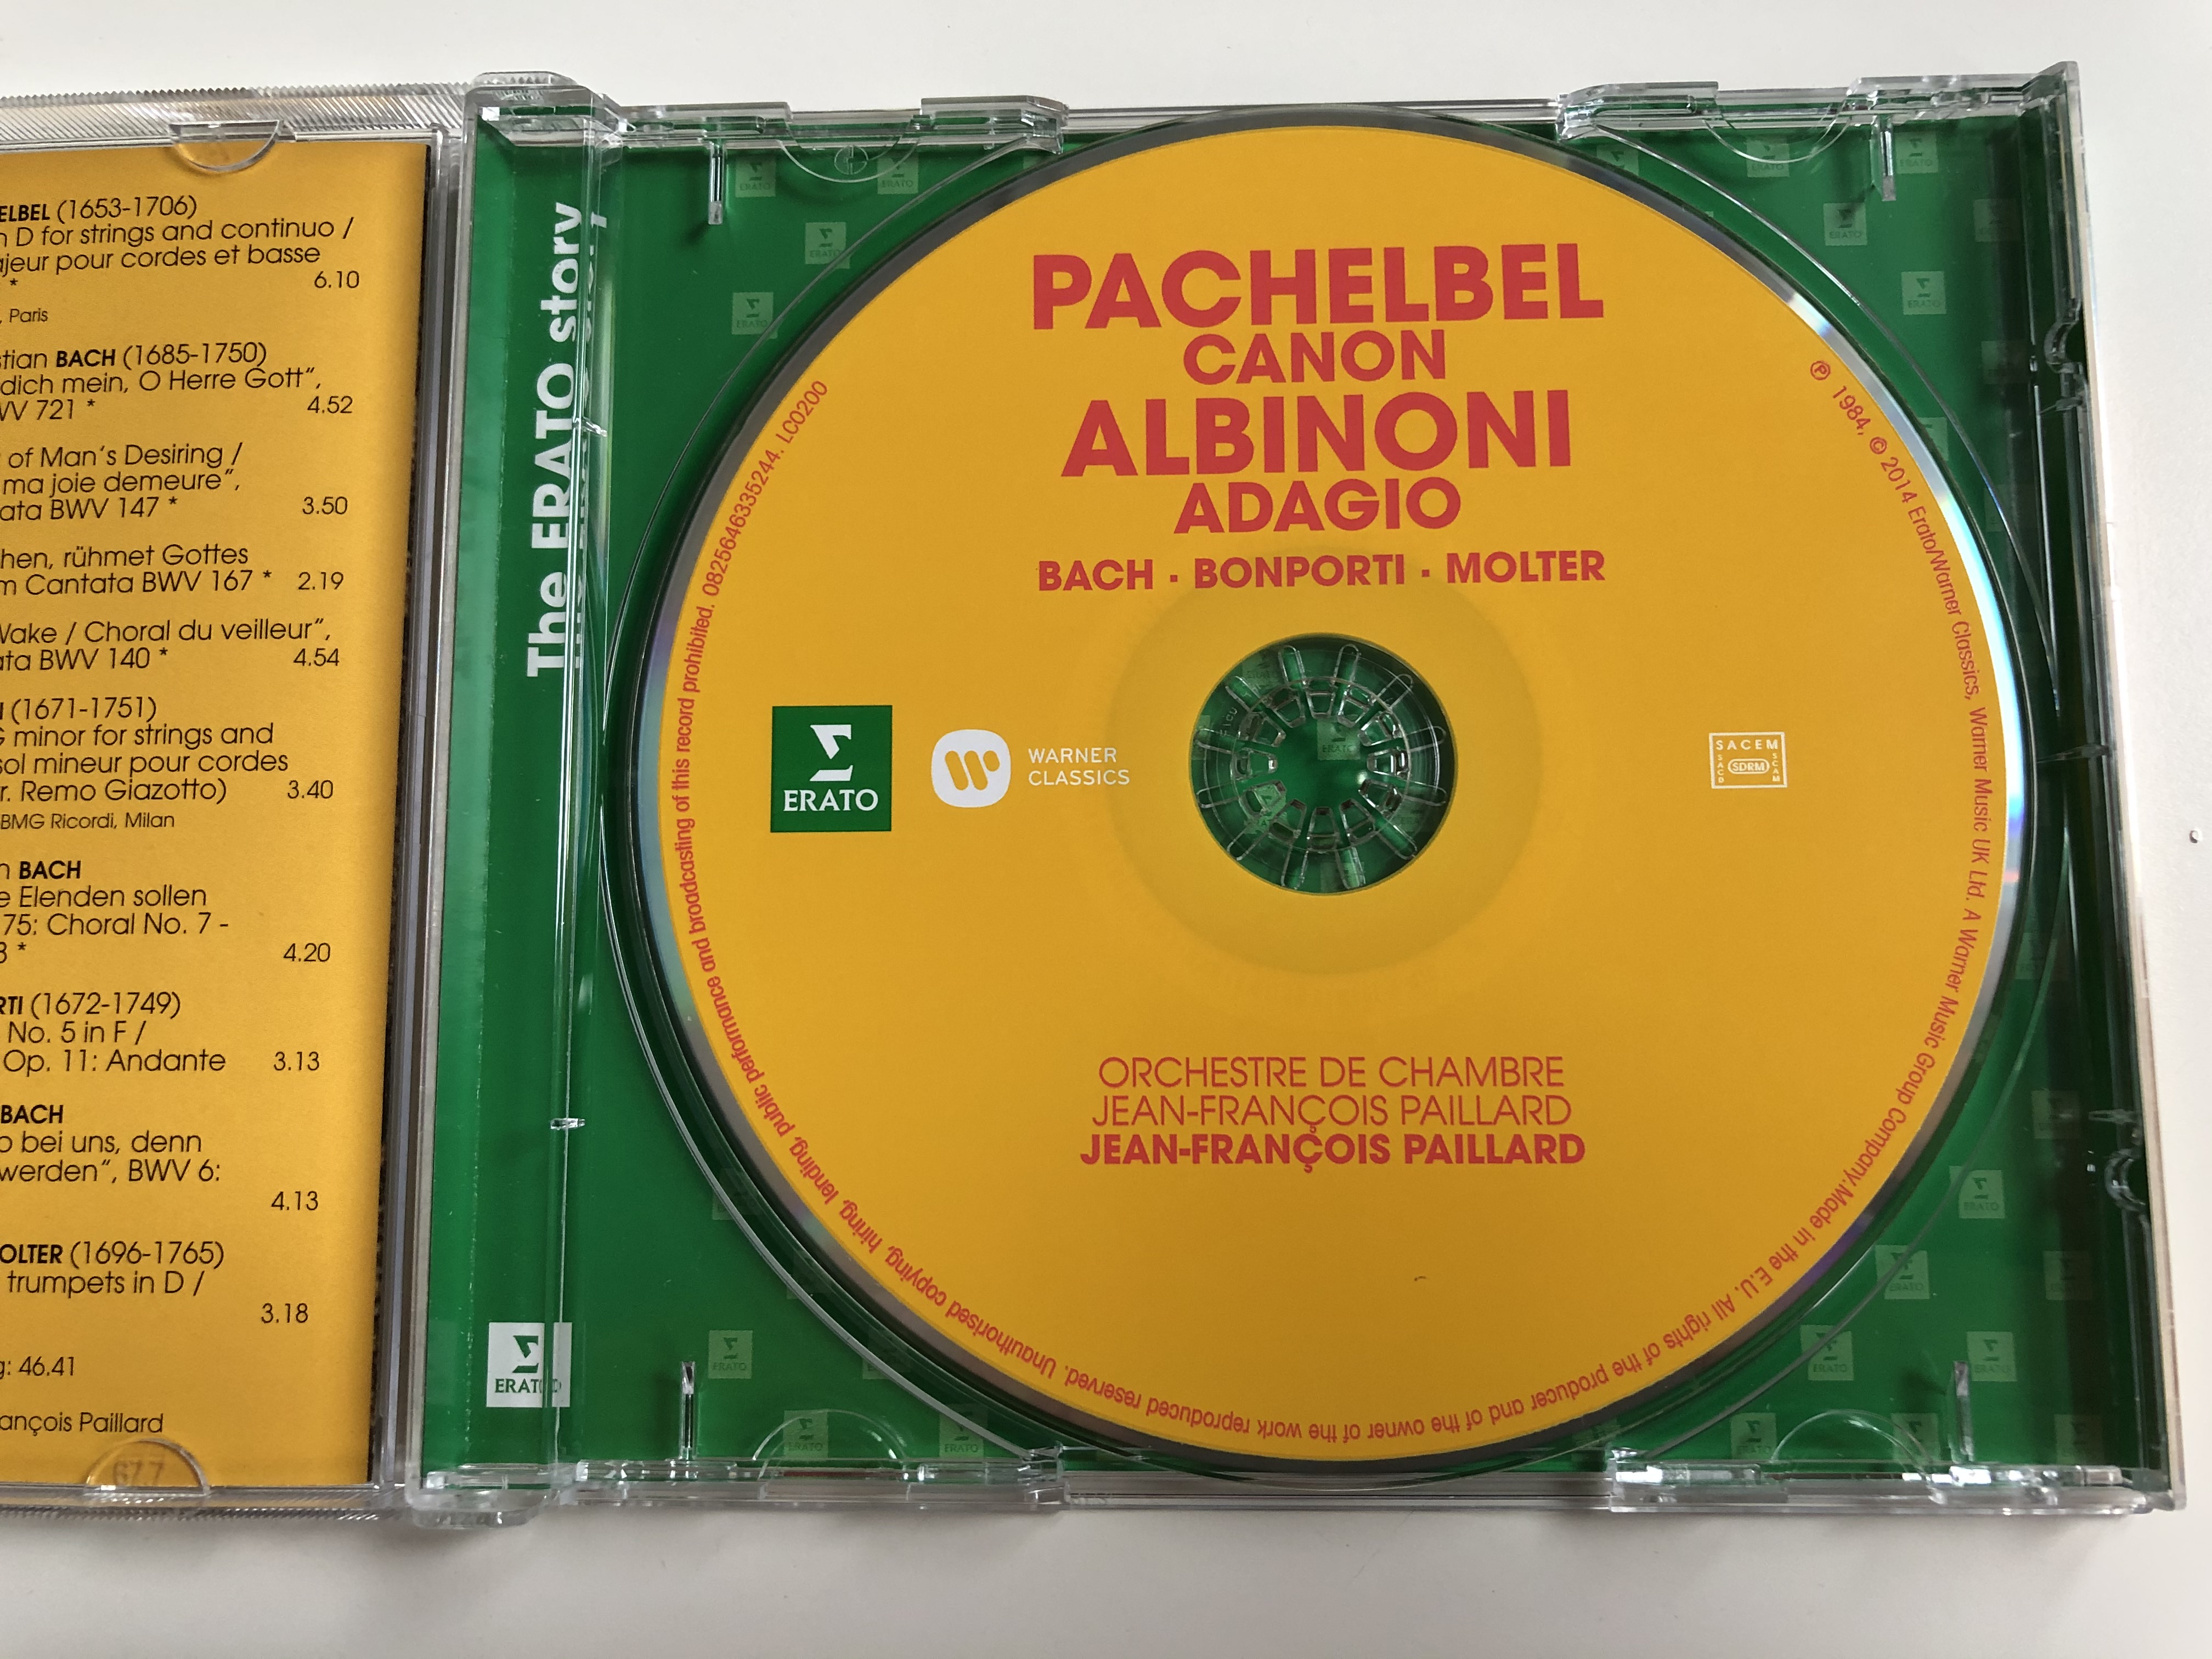 pachelbel-canon-albinoni-adagio-bach-bonporti-molter-orchestre-de-chambre-jean-francois-paillard-erato-audio-cd-2014-0825646335244-4-.jpg